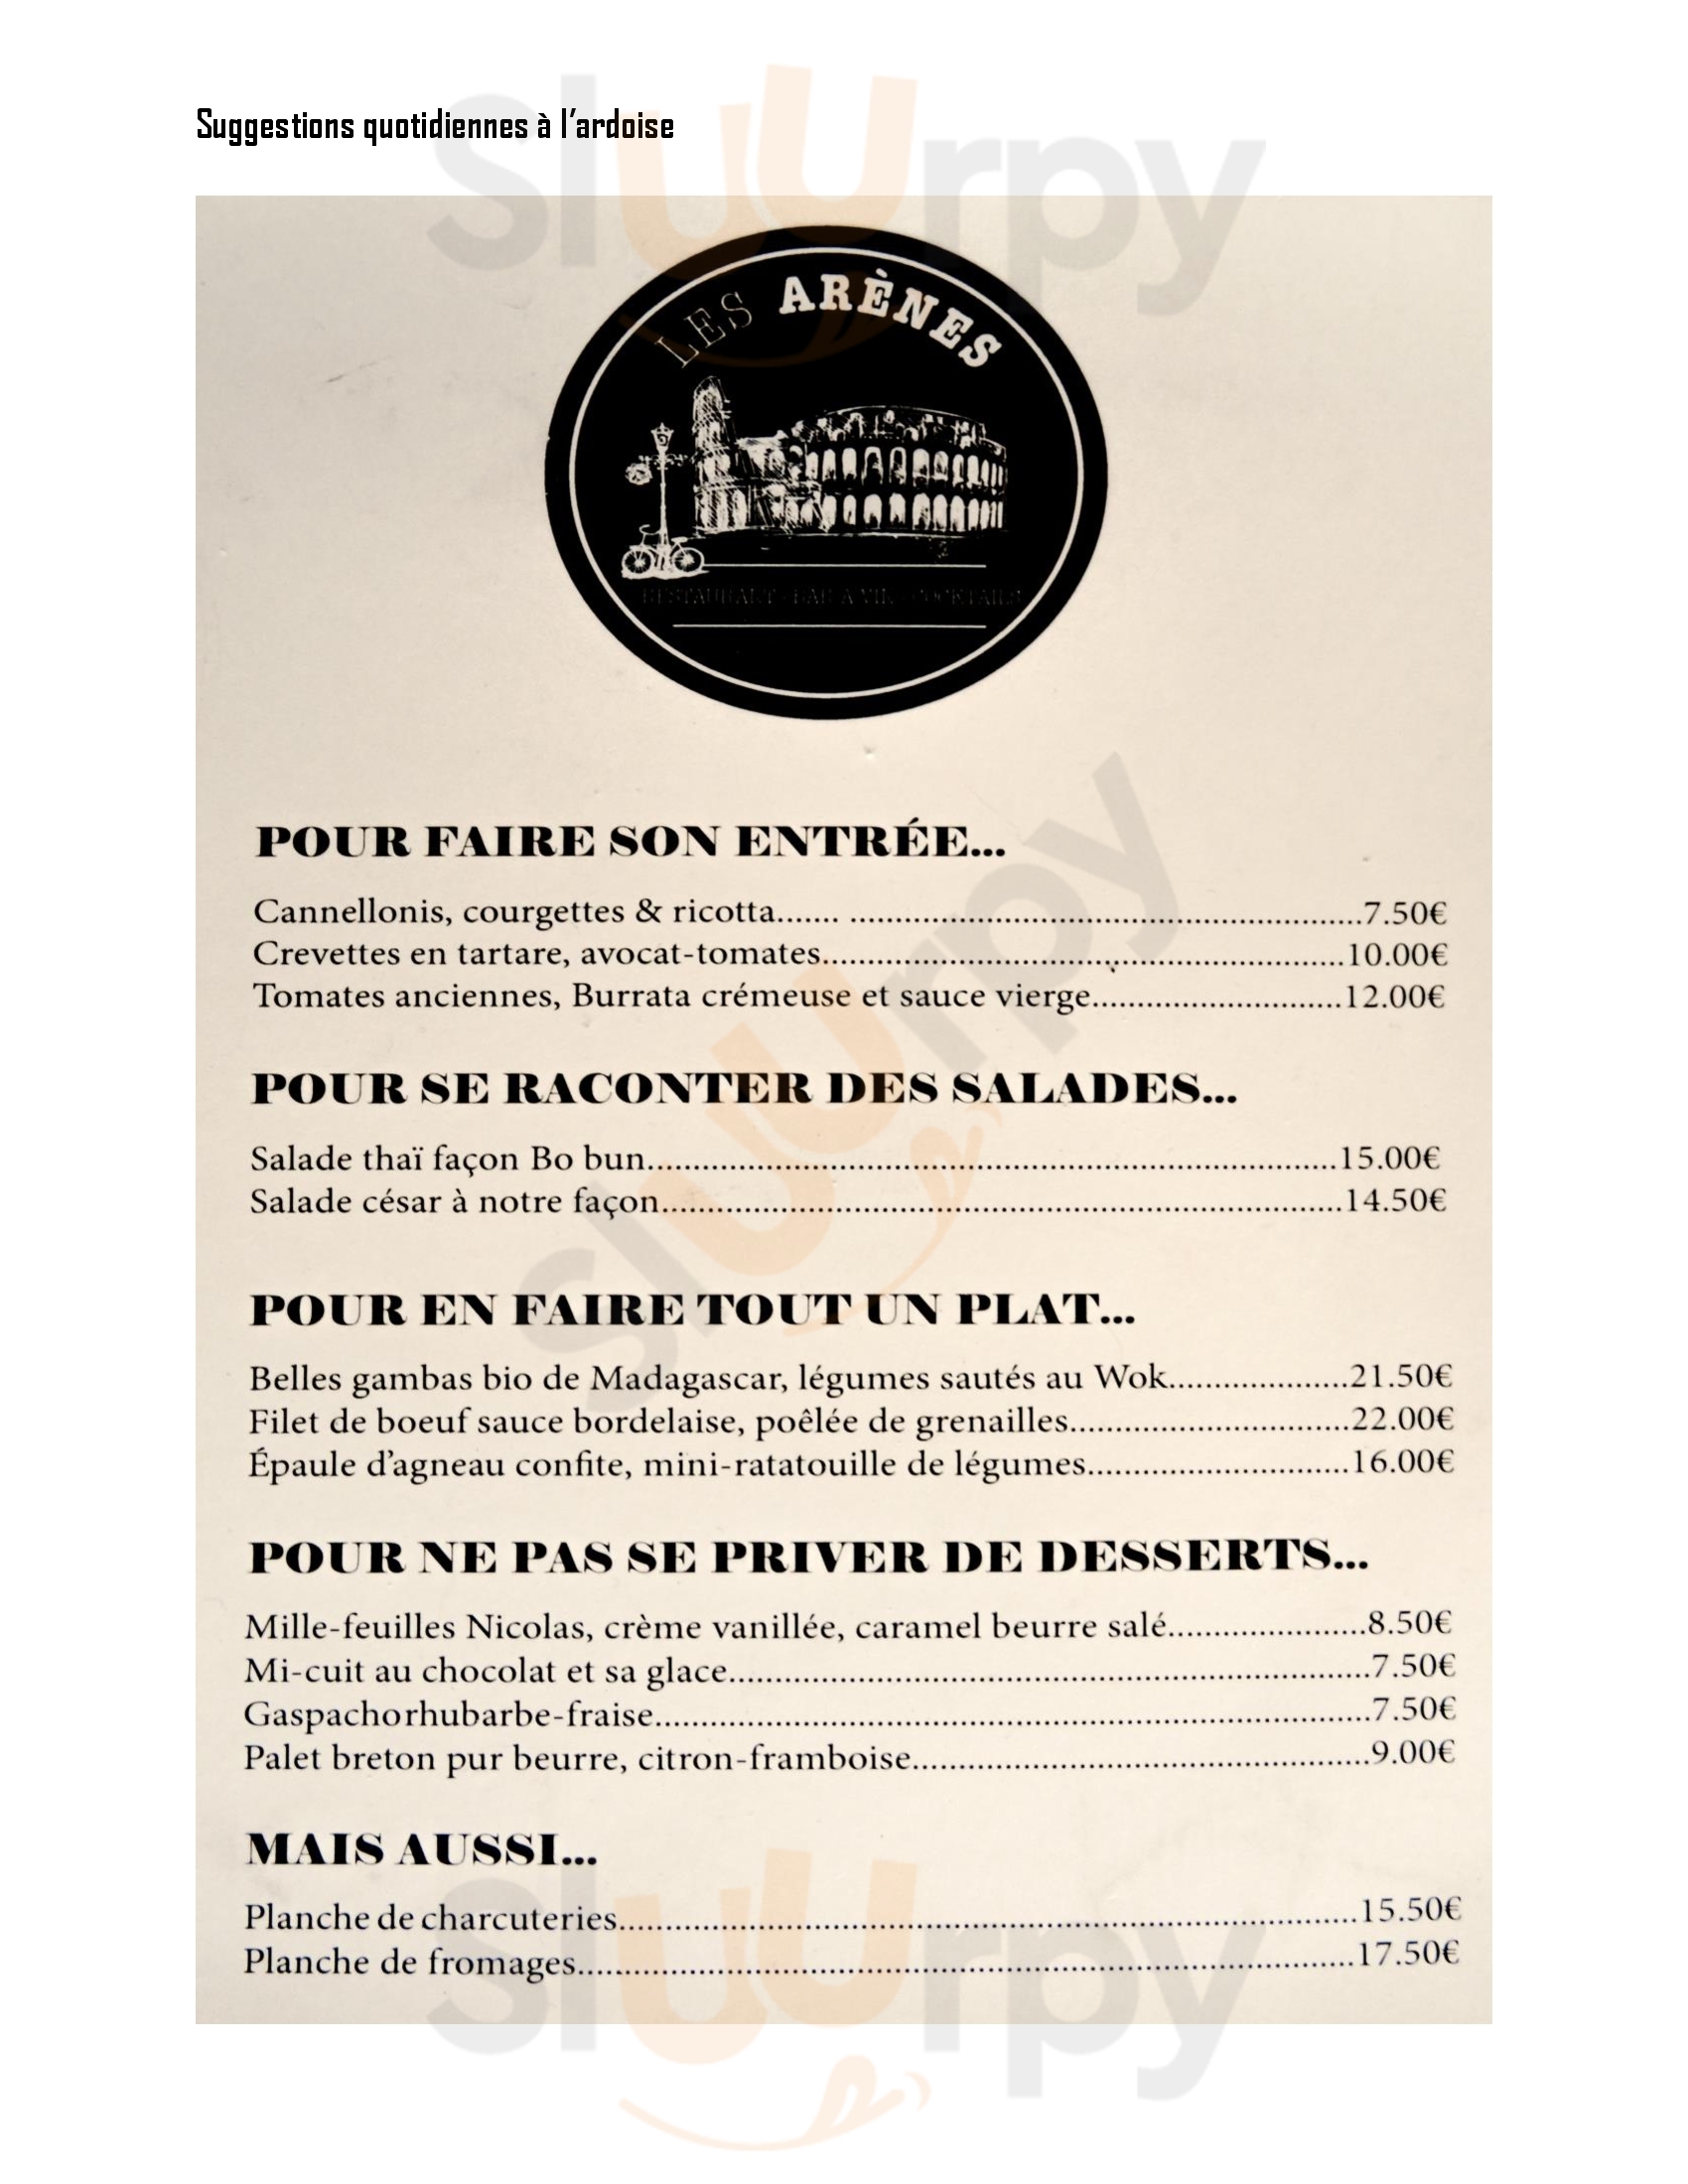 Brasserie Restaurant  Les Arènes Paris Menu - 1